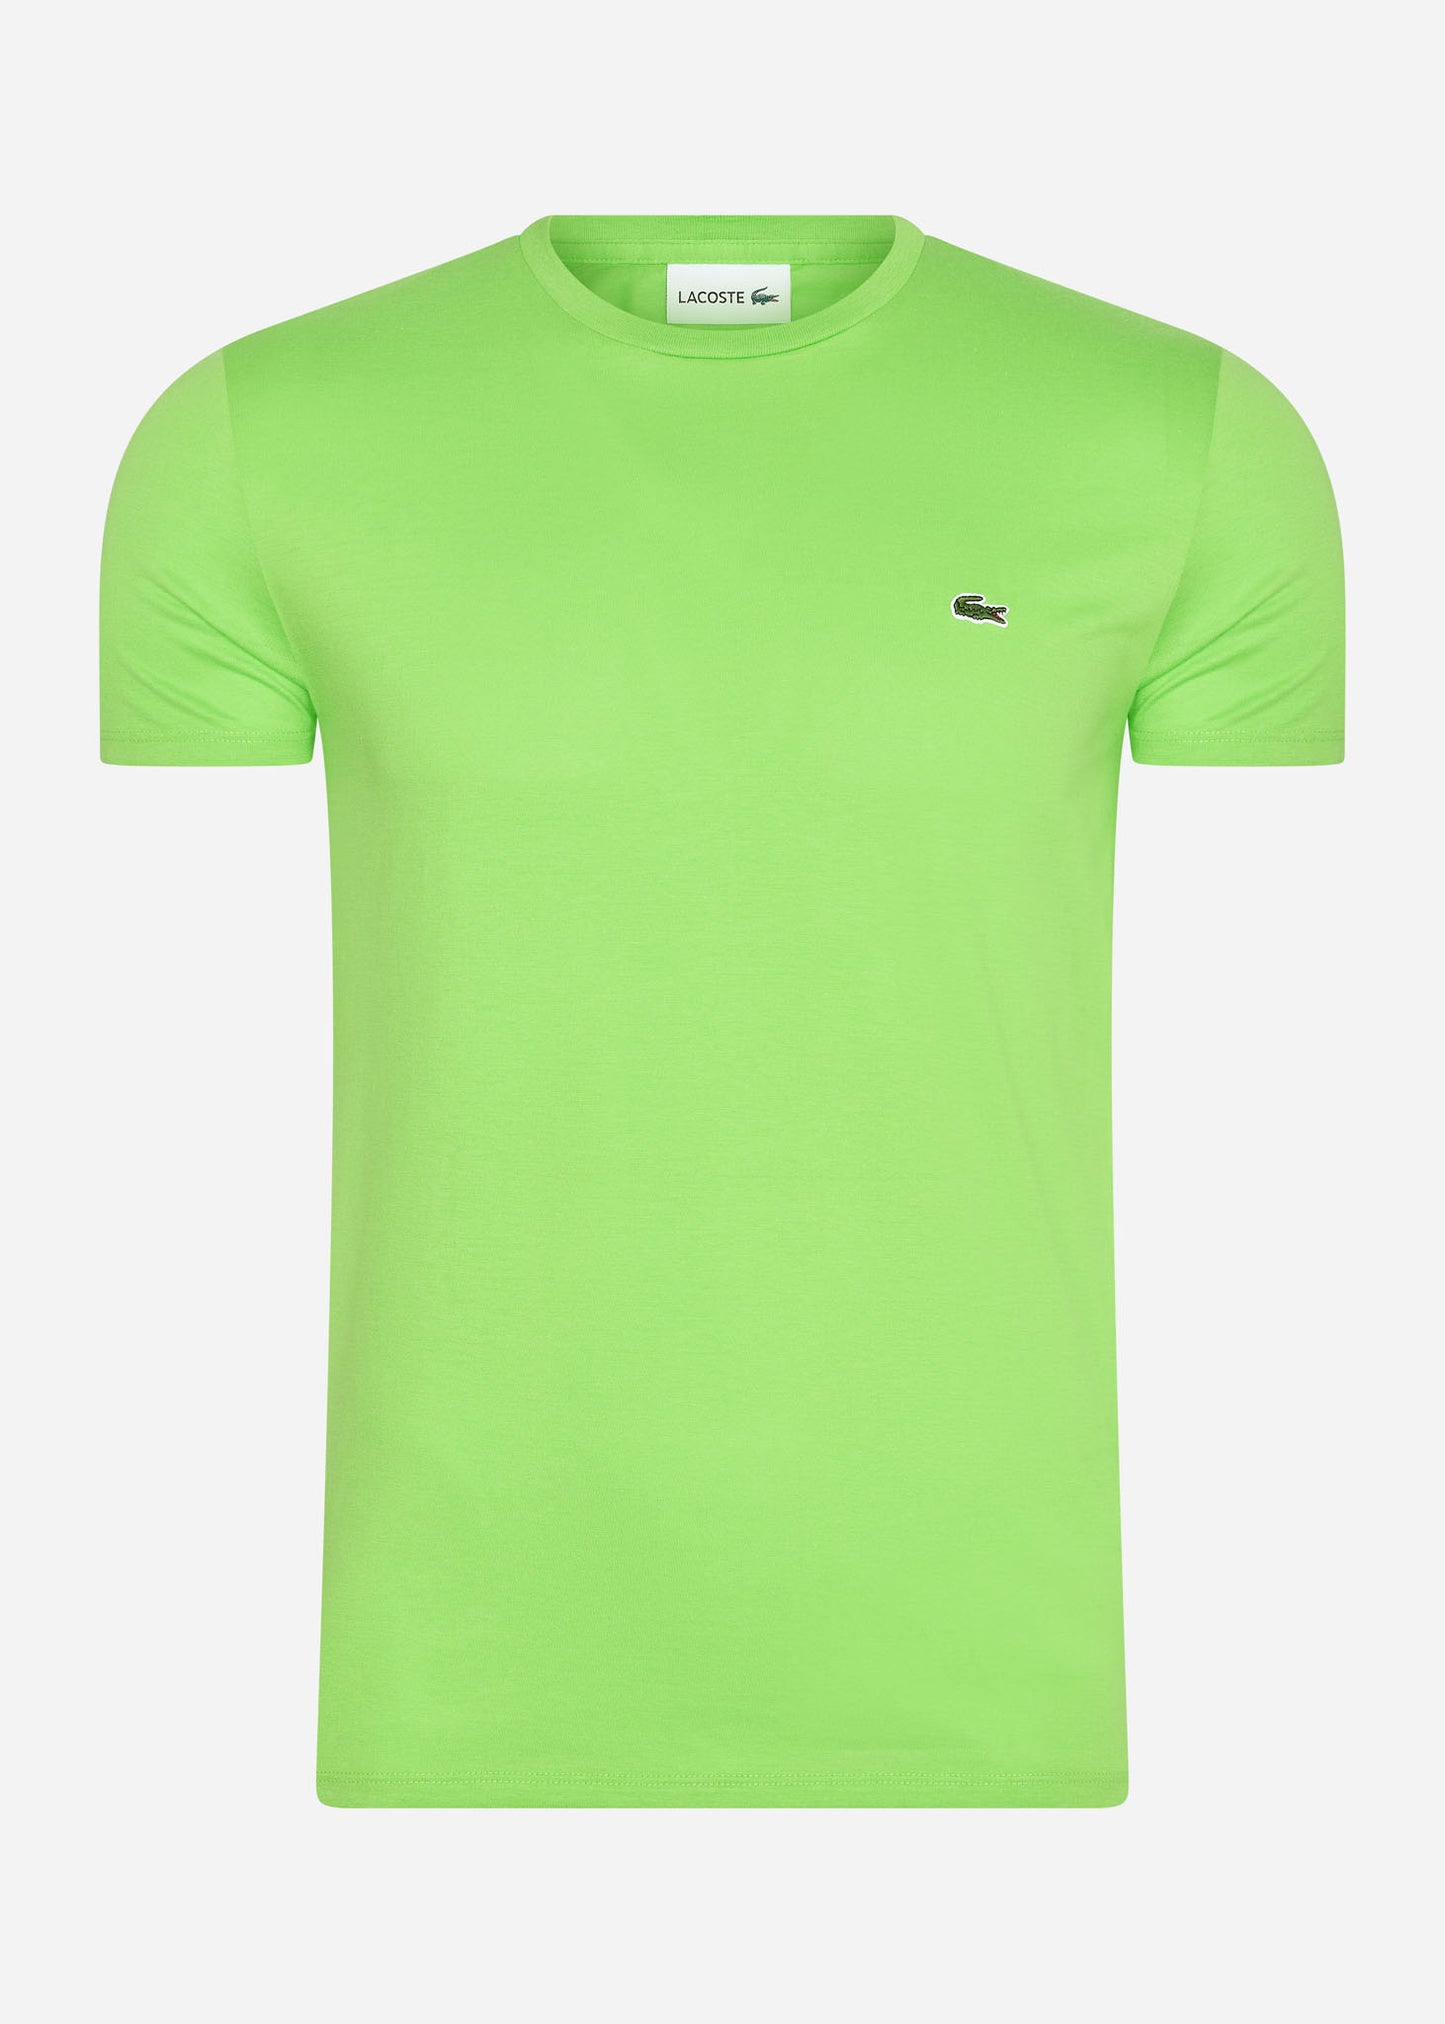 lacoste t-shirt summer neon green